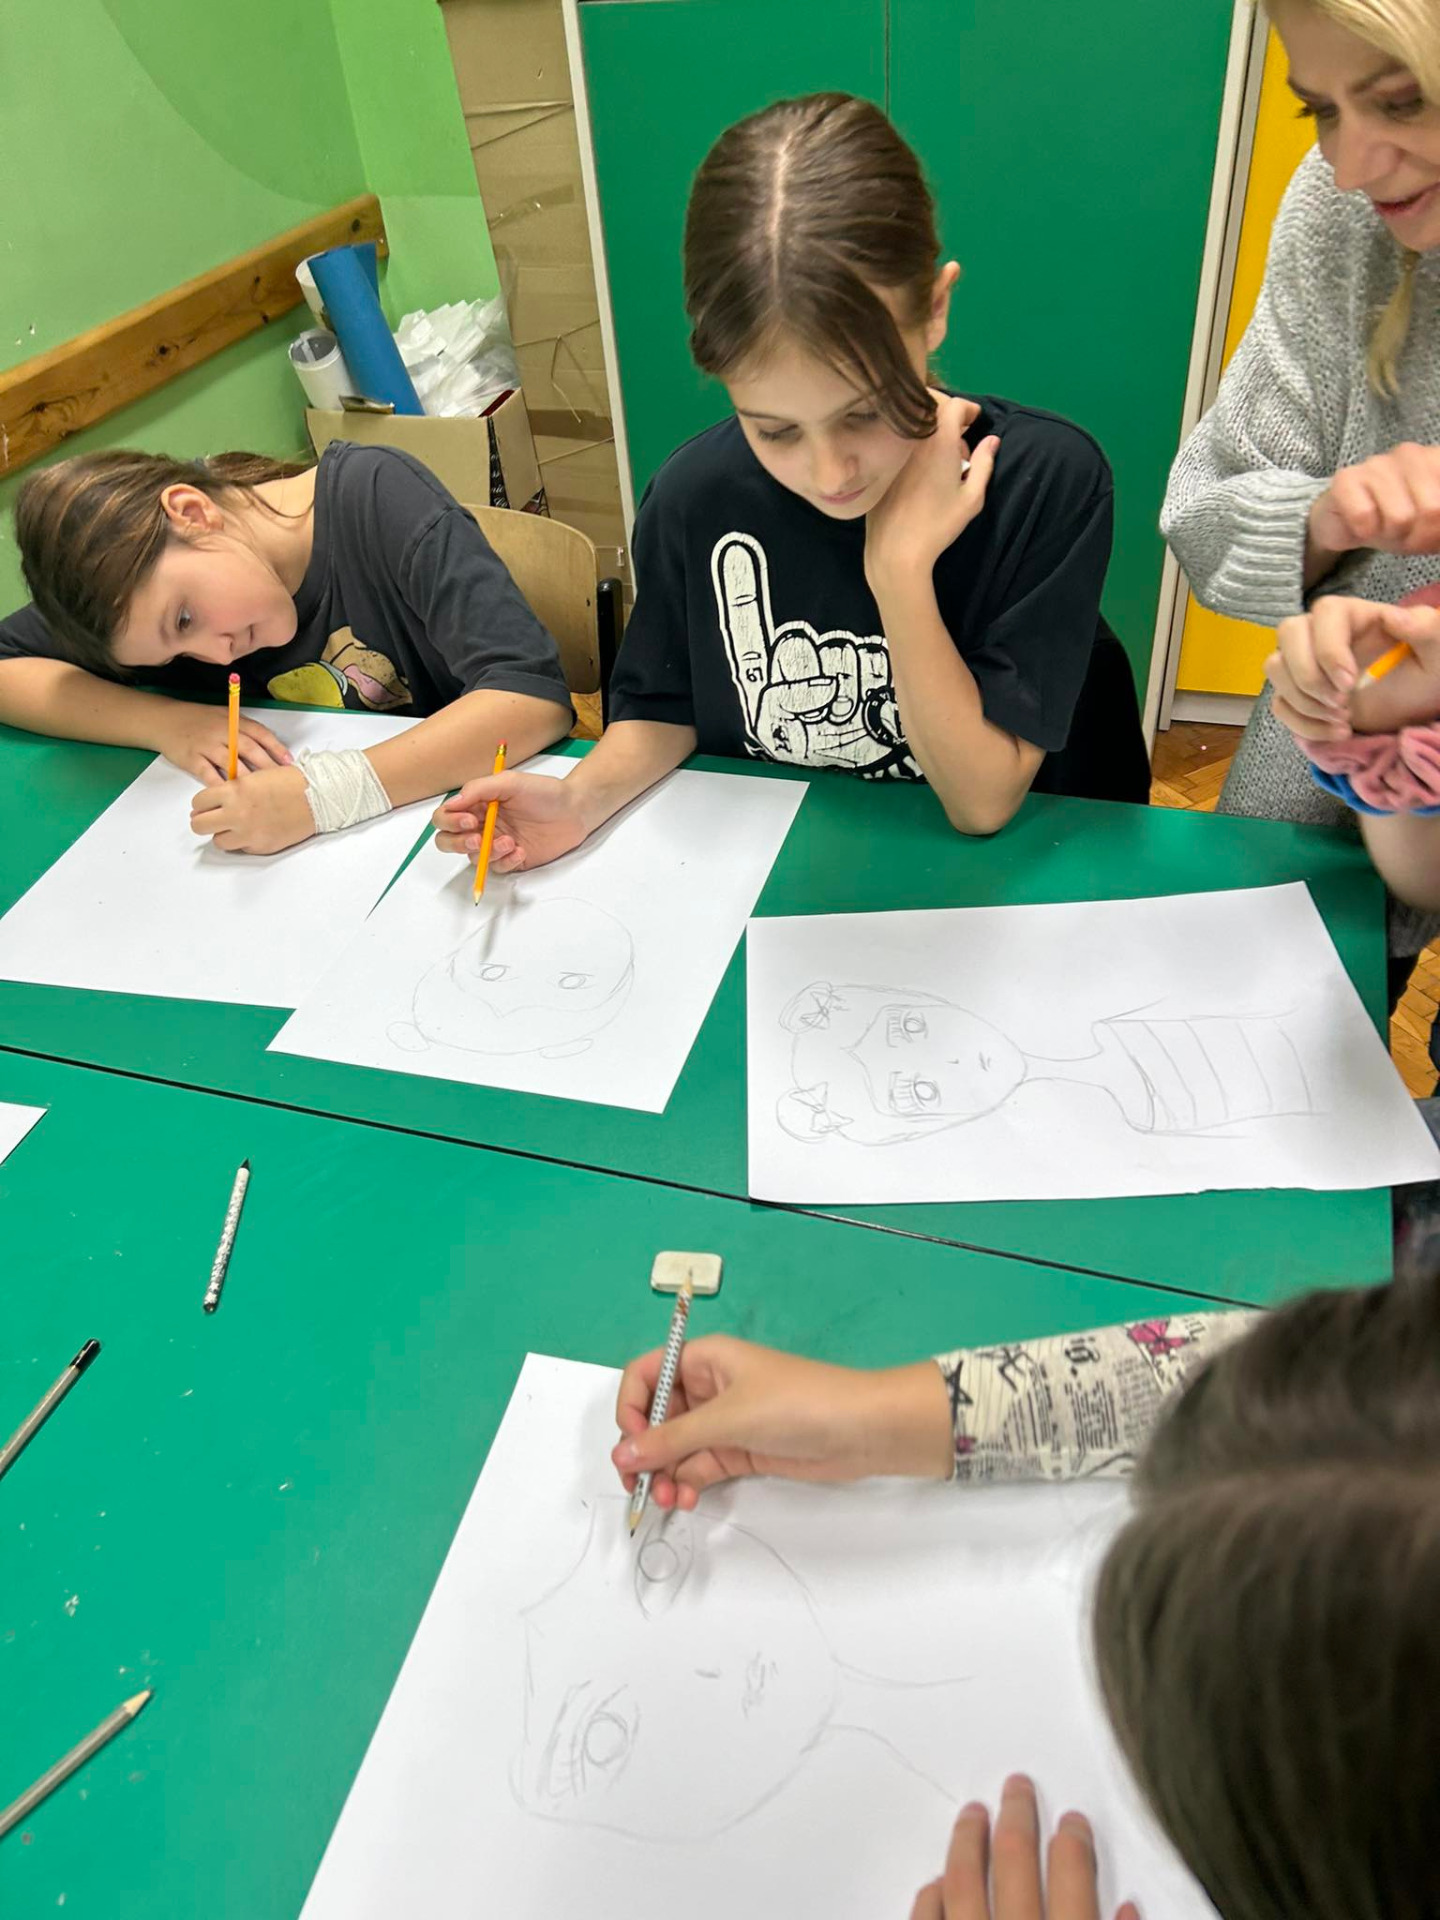 Akcja „Malujemy sercem” - dzieci wykonują szkice i malują obrazy